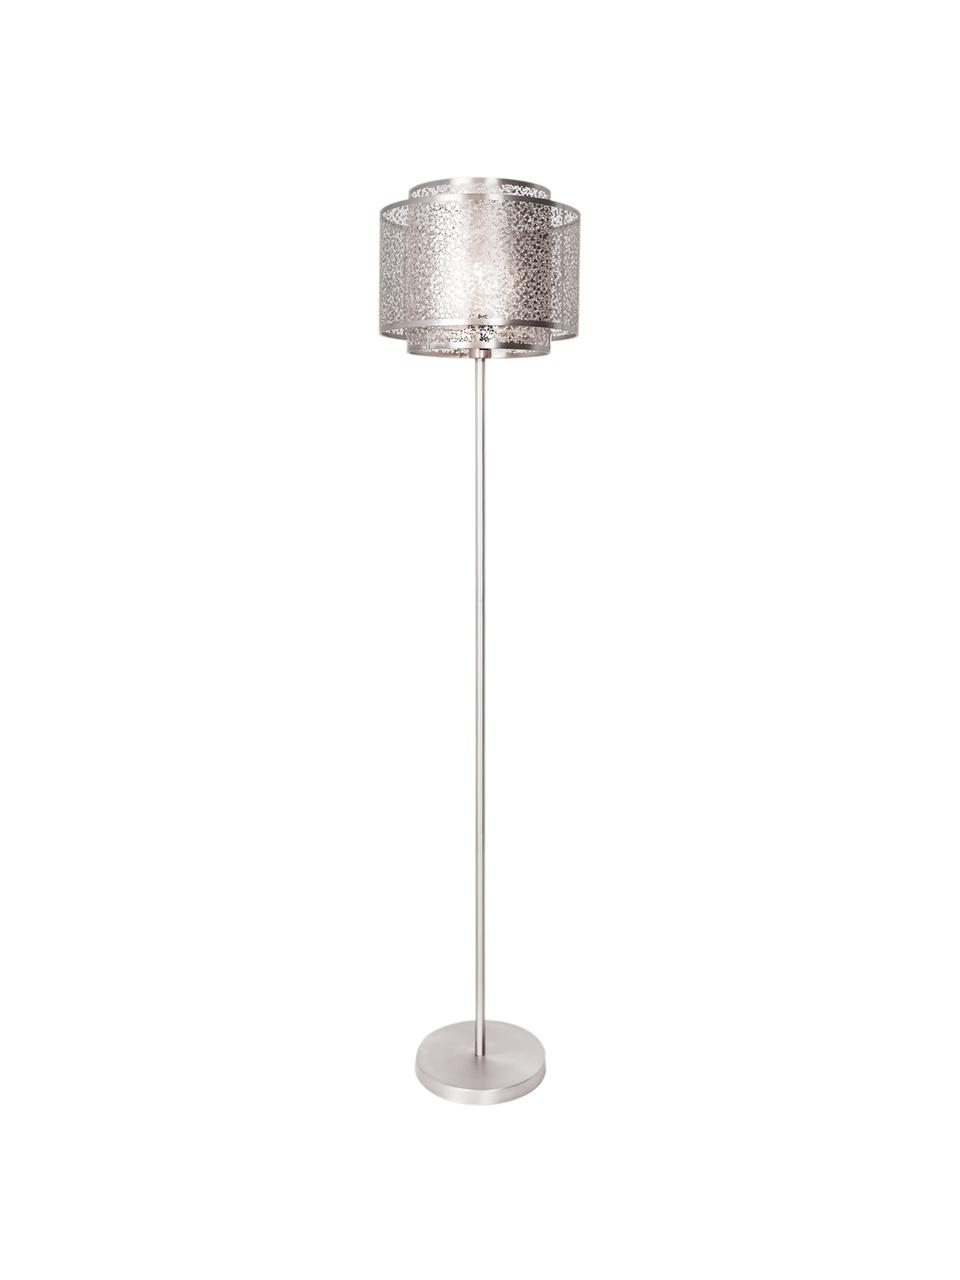 Stehlampe Mesh aus Metall, Nickelfarben, Ø 34 x H 157 cm